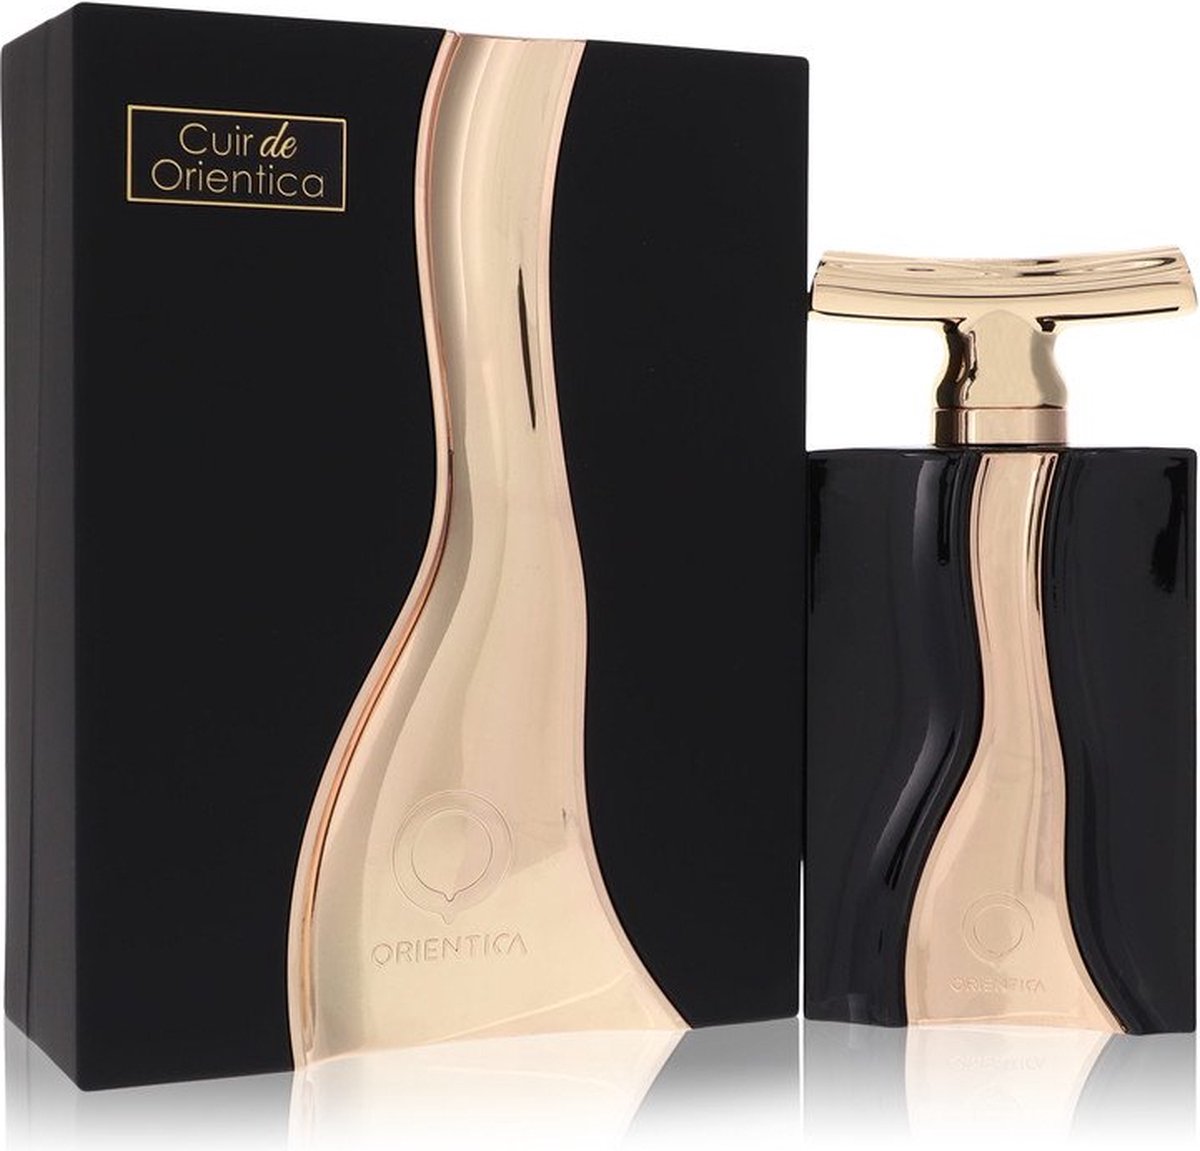 Al Haramain Cuir De Orientica Eau De Parfum Spray 90 Ml For Women